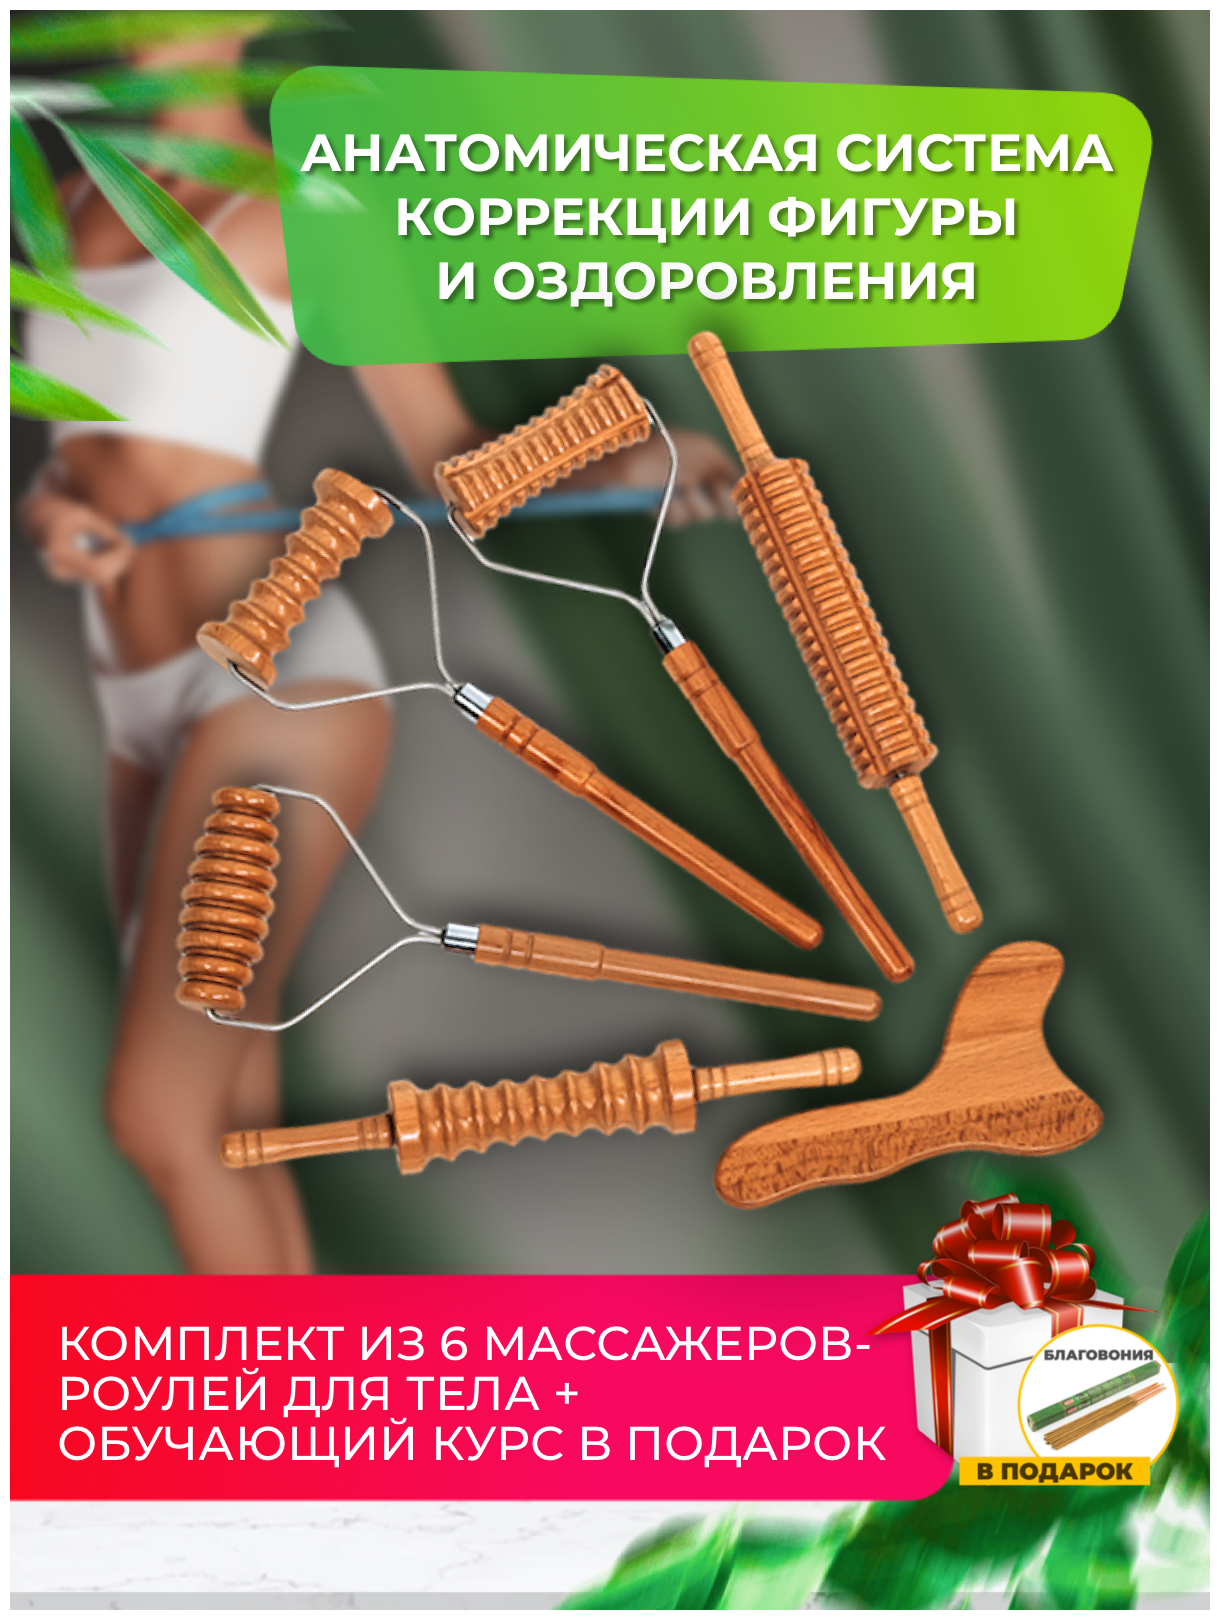 Массажер для тела (6 инструментов)/Массажер деревянный/Модеротерапия/Массажер для спины/Роликовый массажер/Как делать массаж/Массажер купить/massage